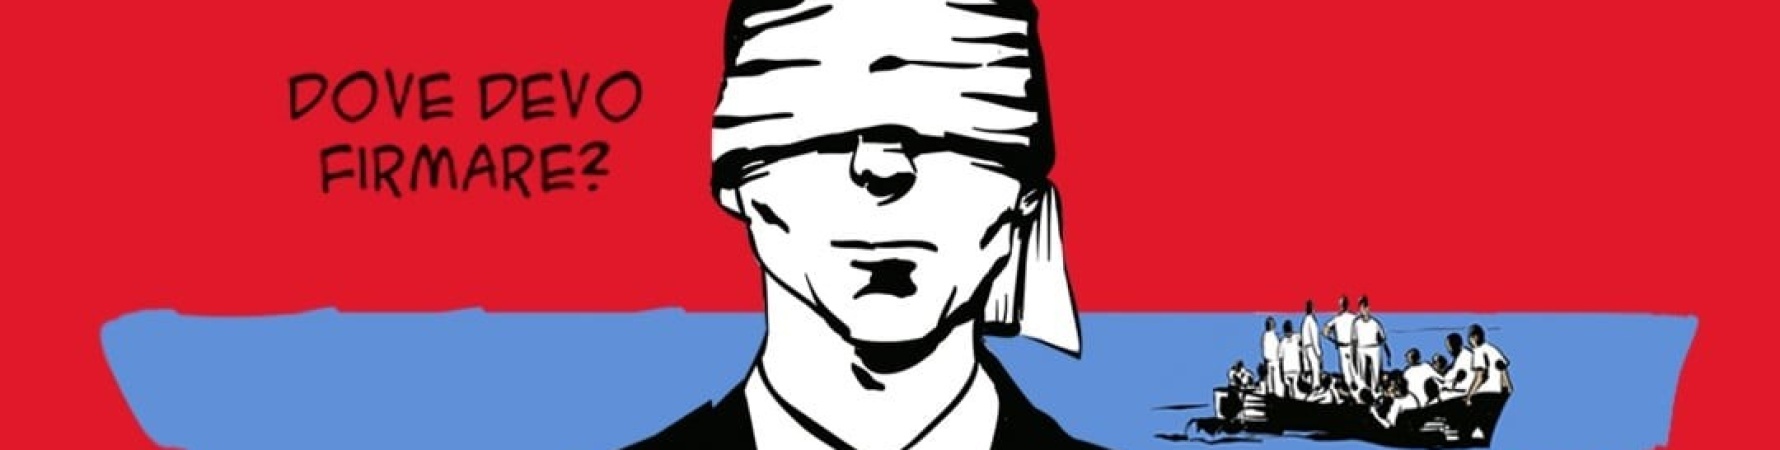  vignetta con uomo con benda davanti agli occhi per la mobilitazione contro il rinnovo del memorandum italia libia